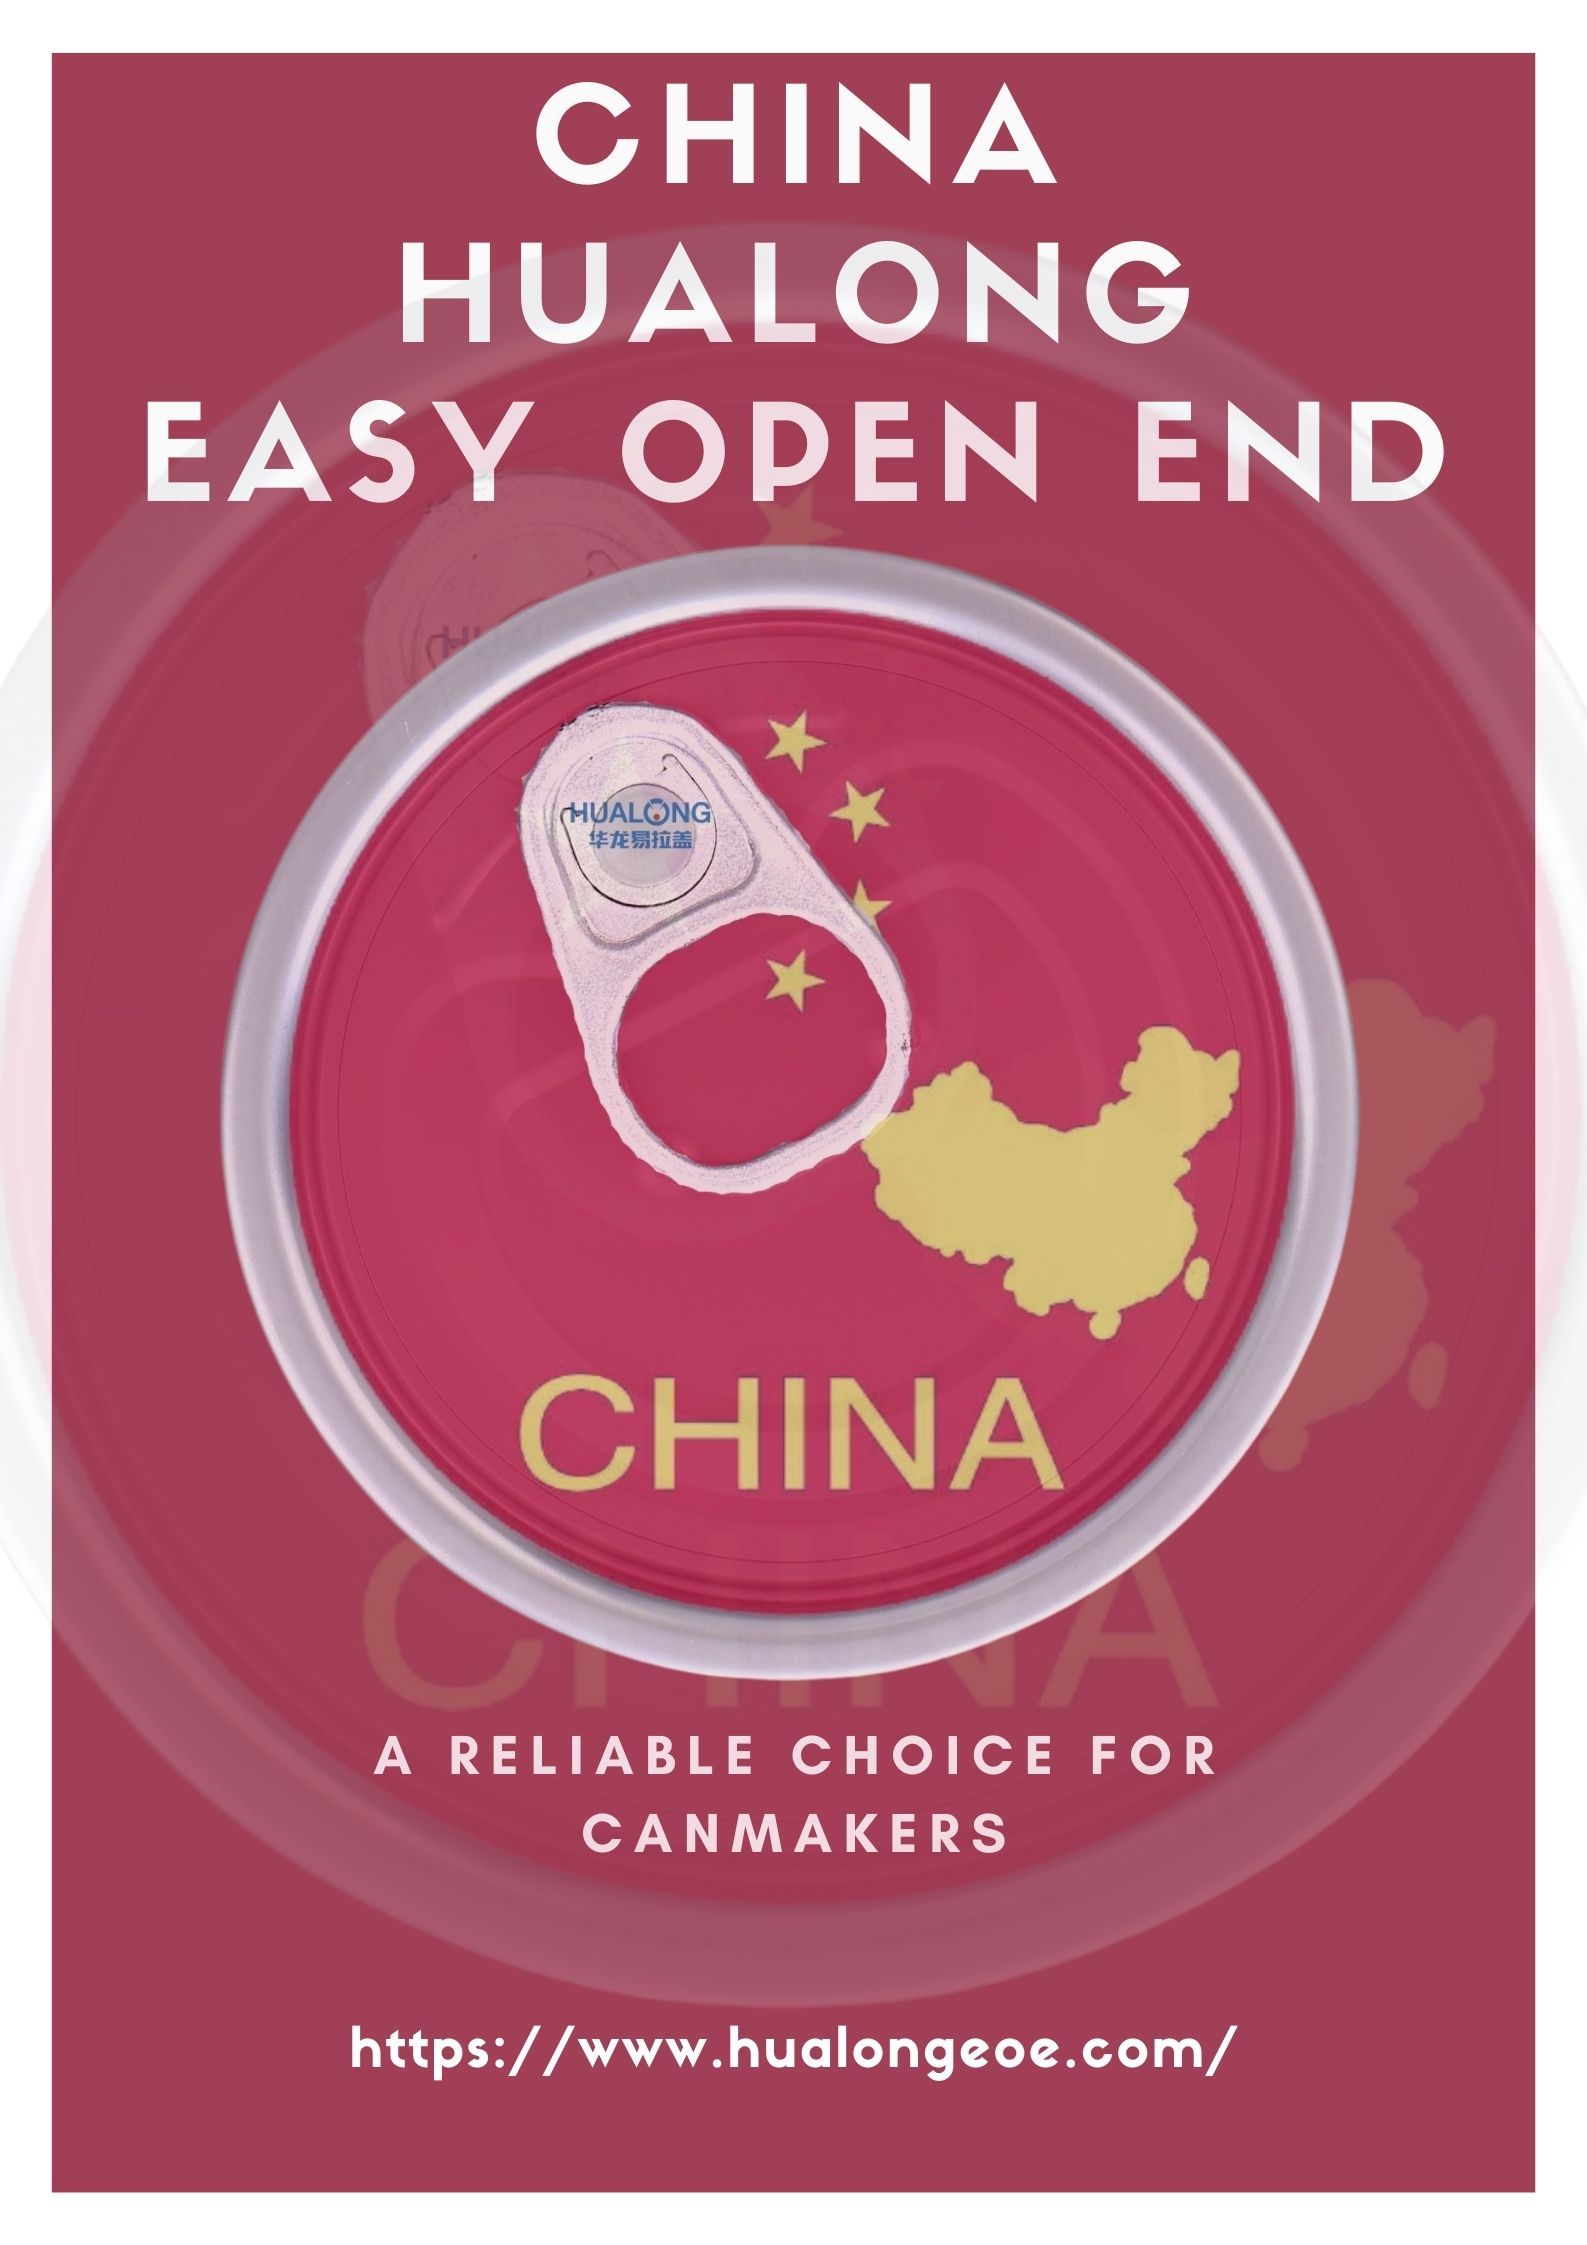 Hualong Easy Open End: Chaguo Kuaminika kwa Canmakers